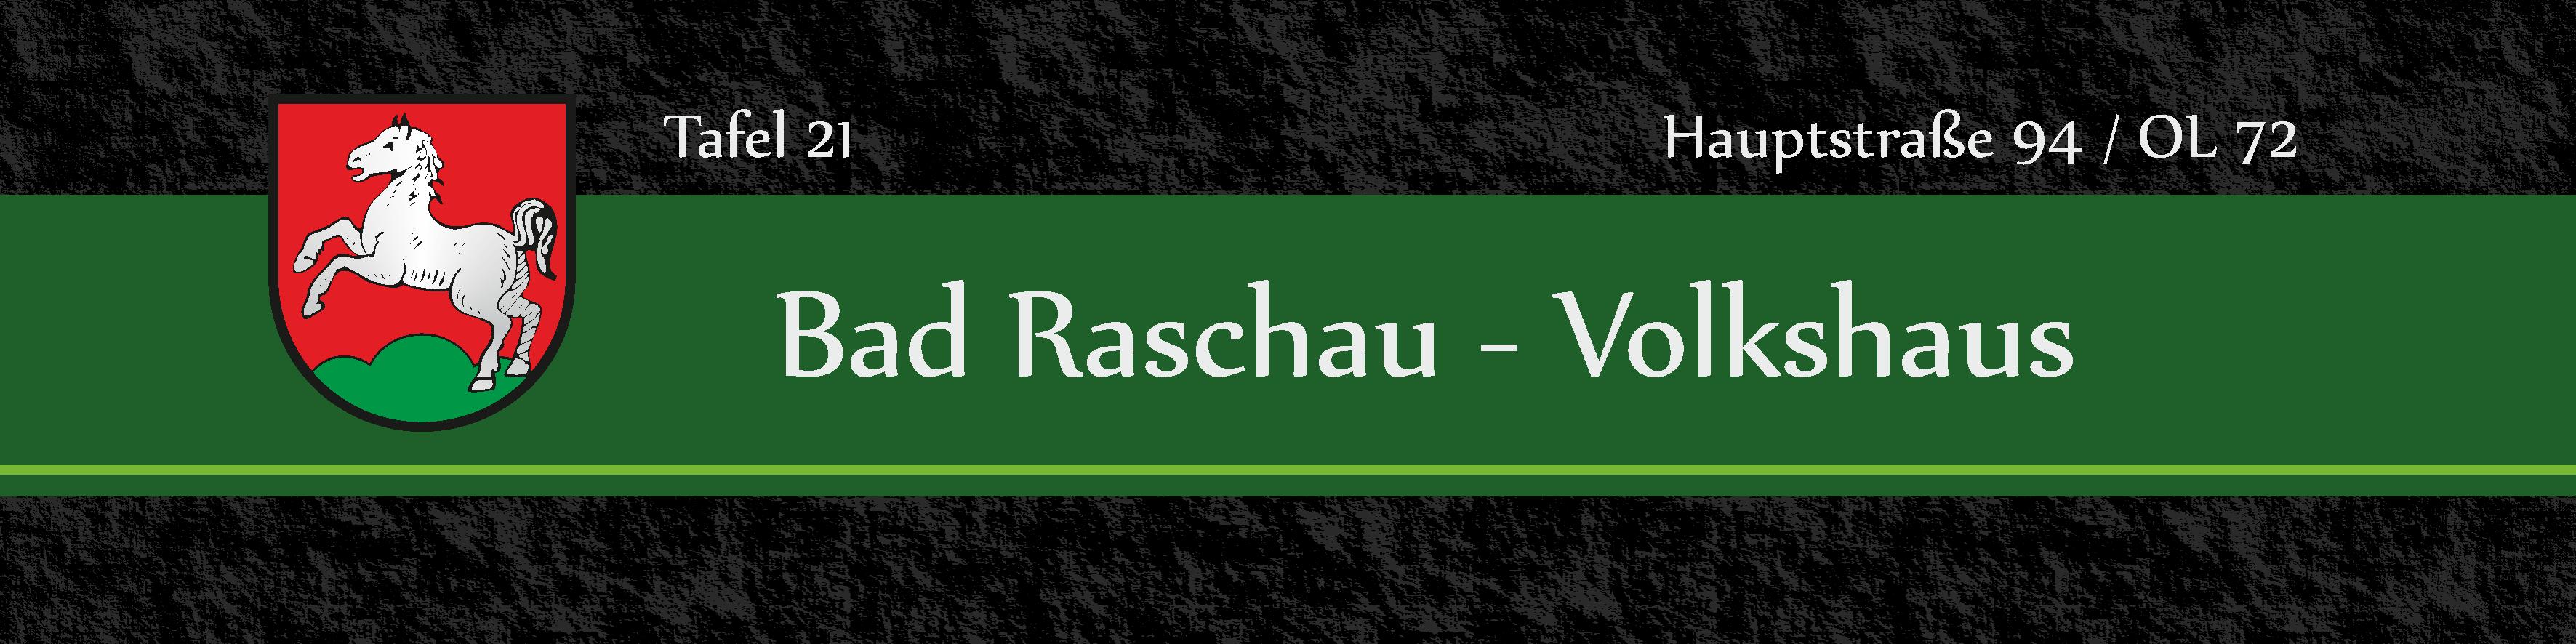 Tafel 21 Bad Raschau Volkshaus